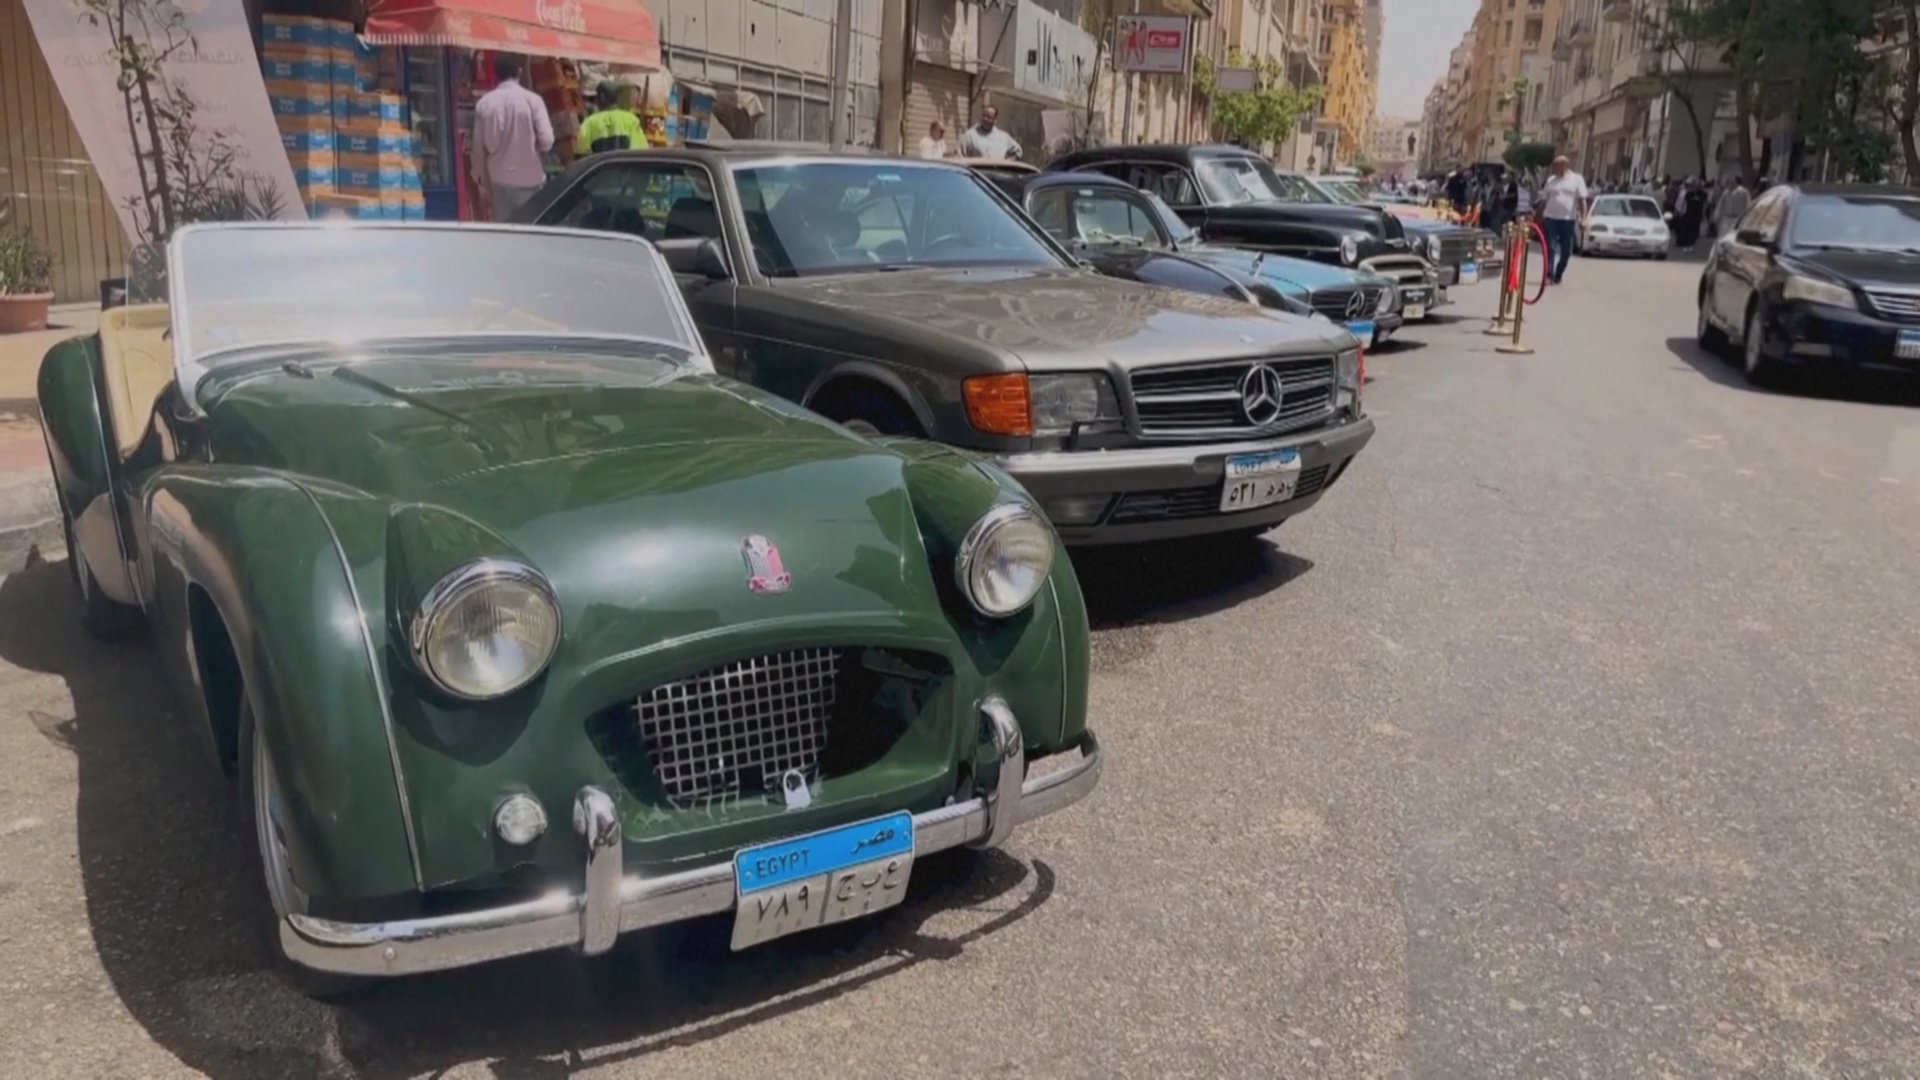 Ралли ретроавтомобилей устроили в Каире